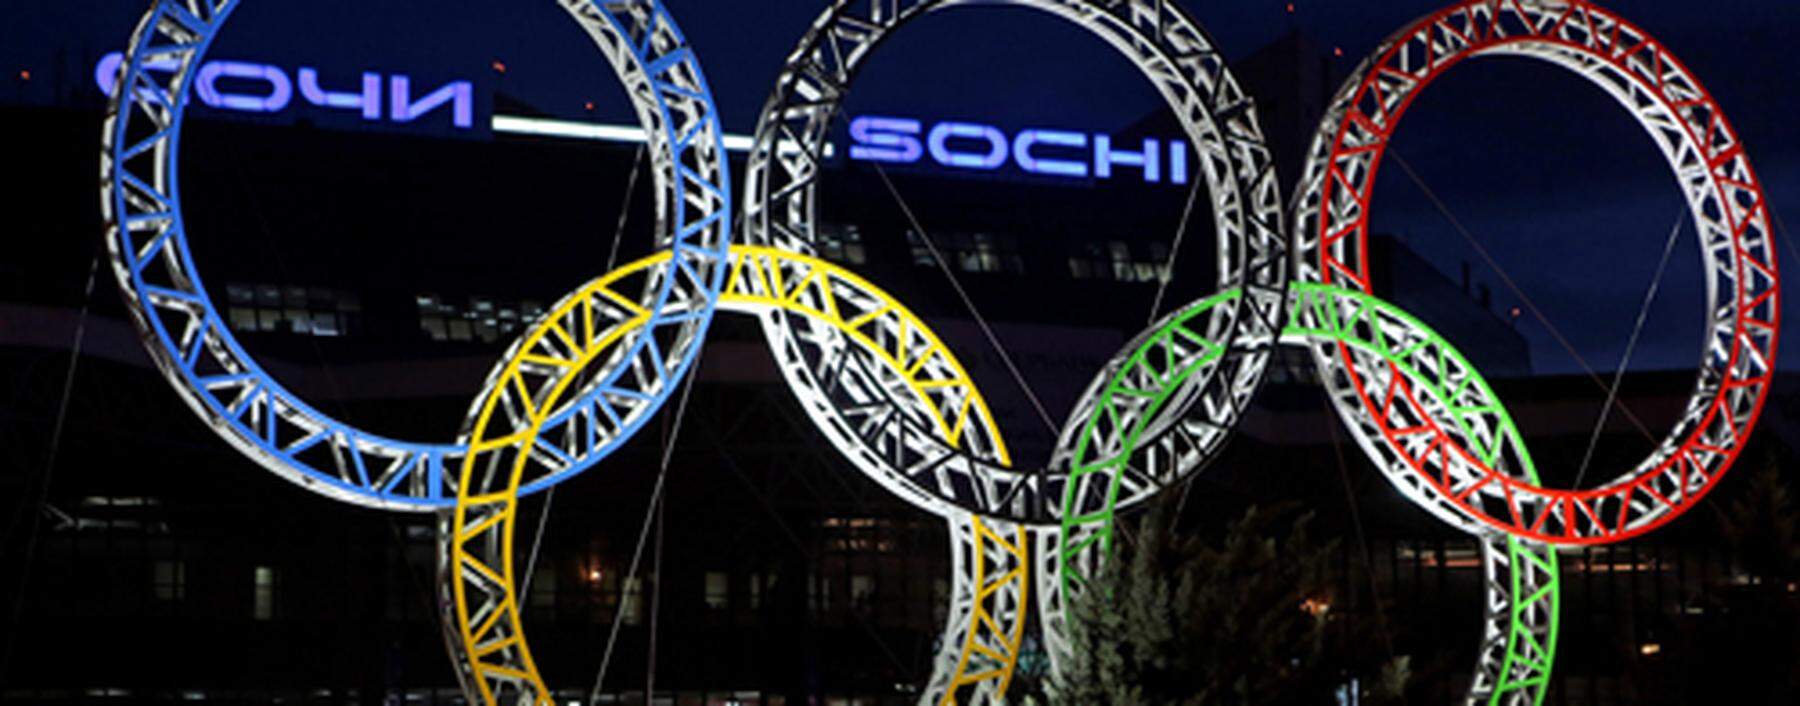 OLYMPIA - Olympische Winterspiele 2014, Vorberichte, Info Reise